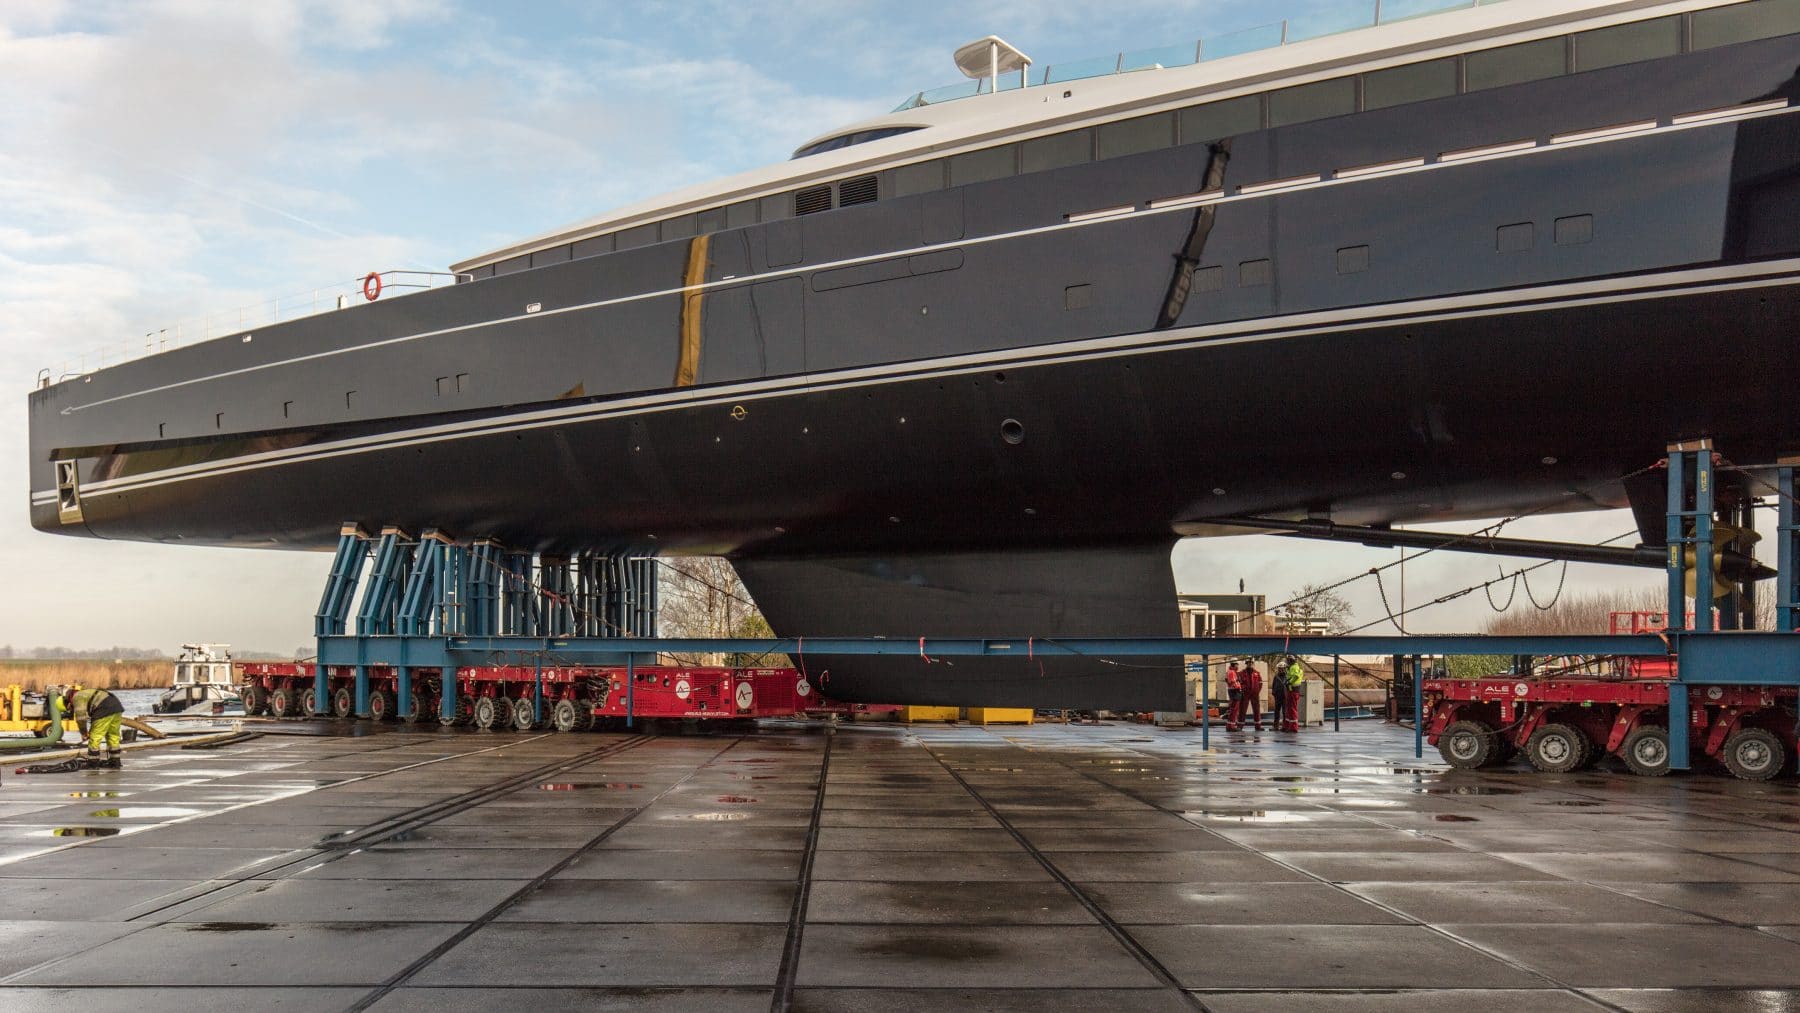 imagen 3 de Royal Huisman muestra al Sea Eagle II, el yate de vela y aluminio más grande del mundo.